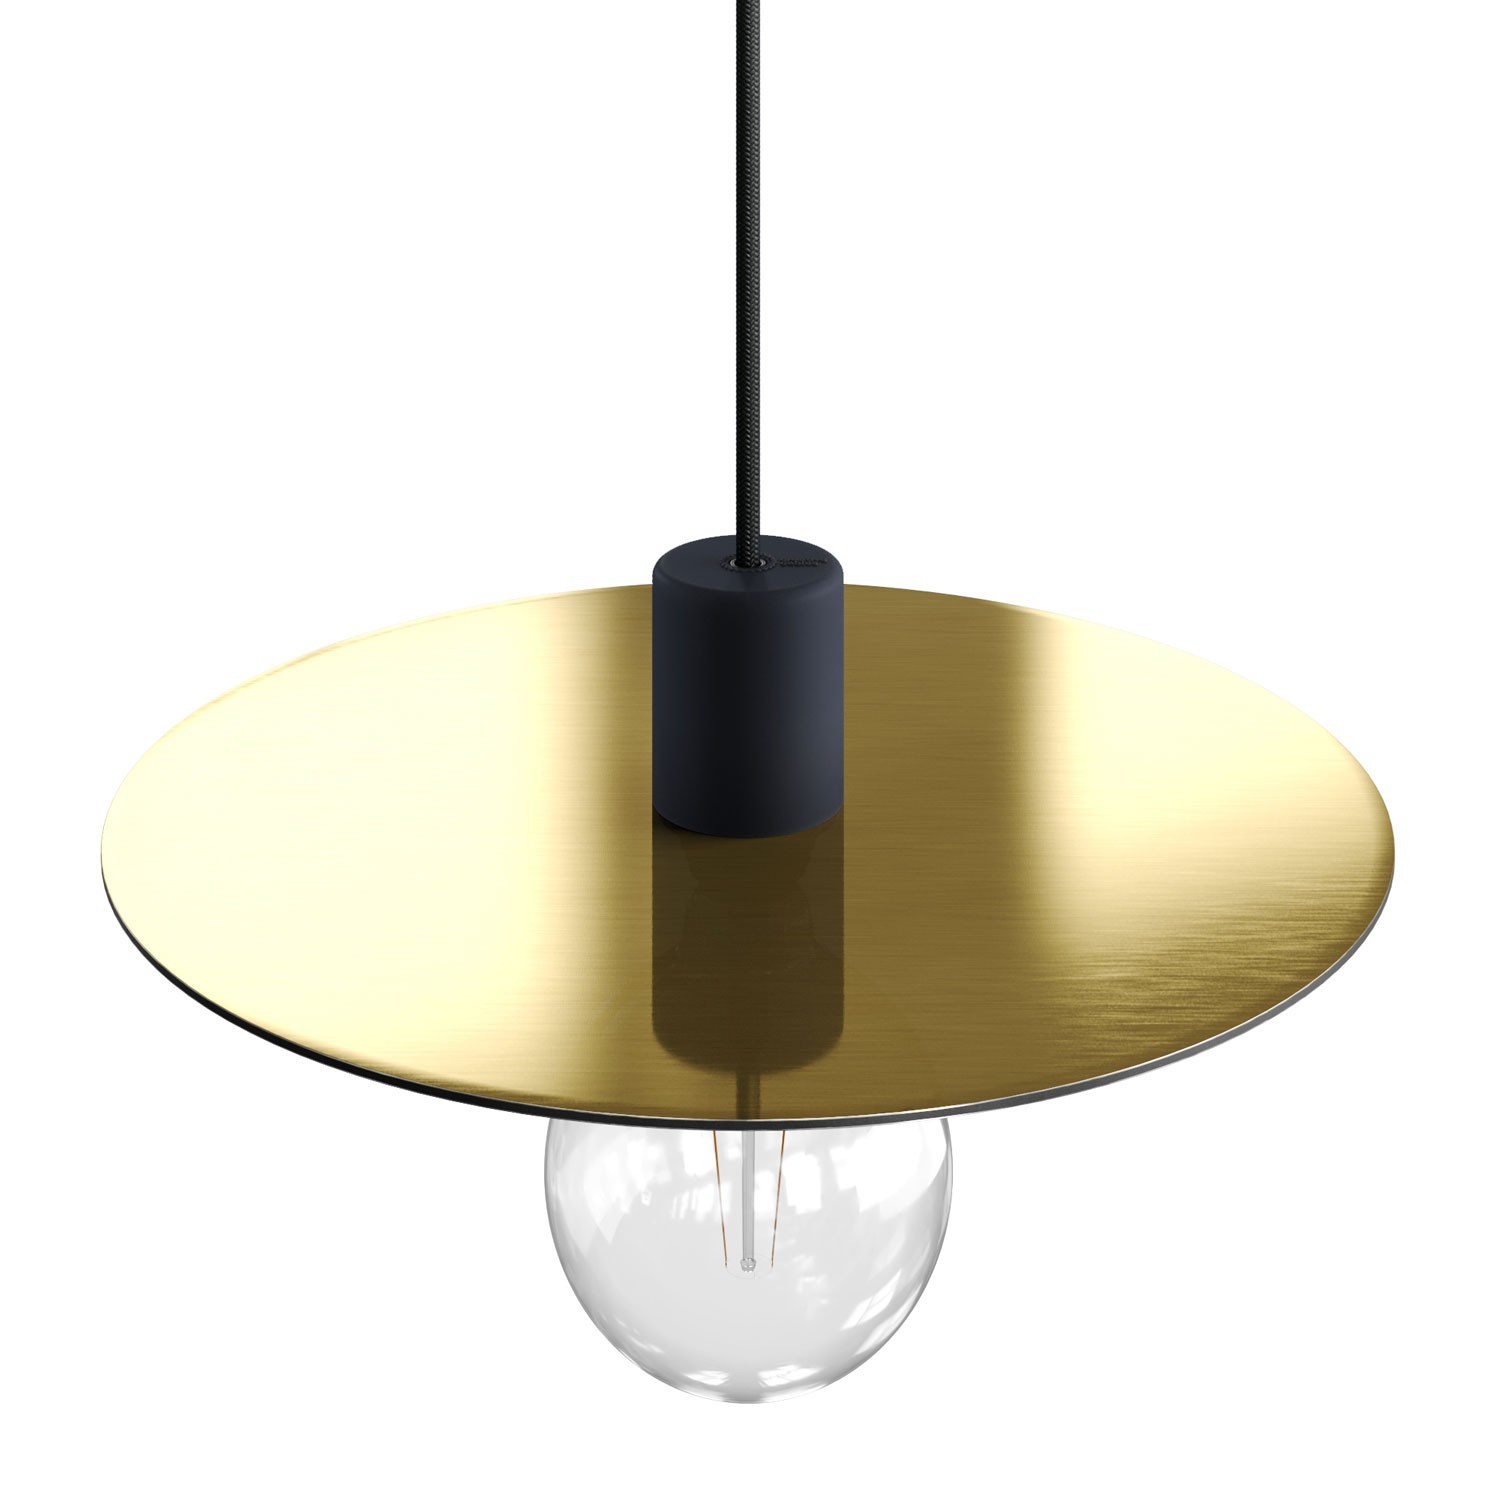 Placa Dibond extragrande "Ellepì" para lámparas colgantes de exterior, diámetro 40cm - Made in Italy